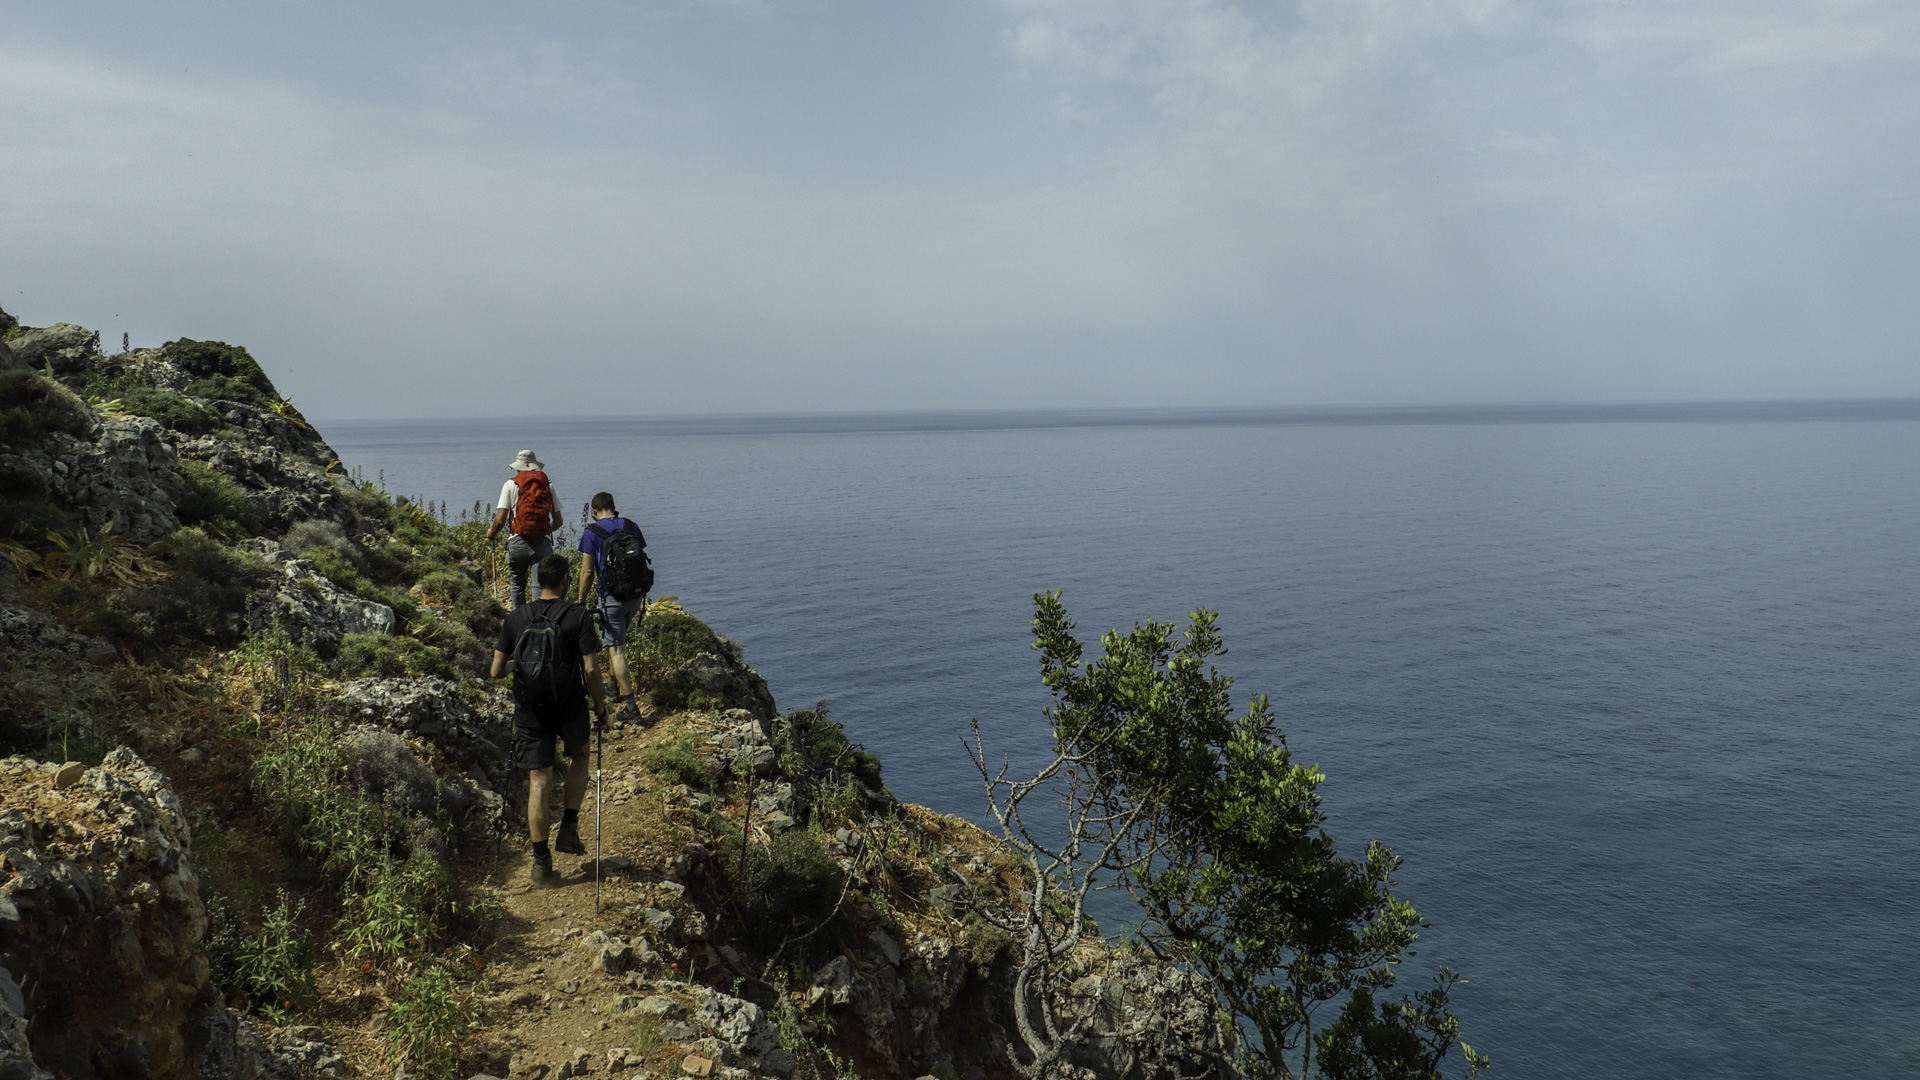 Alternative Crete - Travel and hiking in Crete